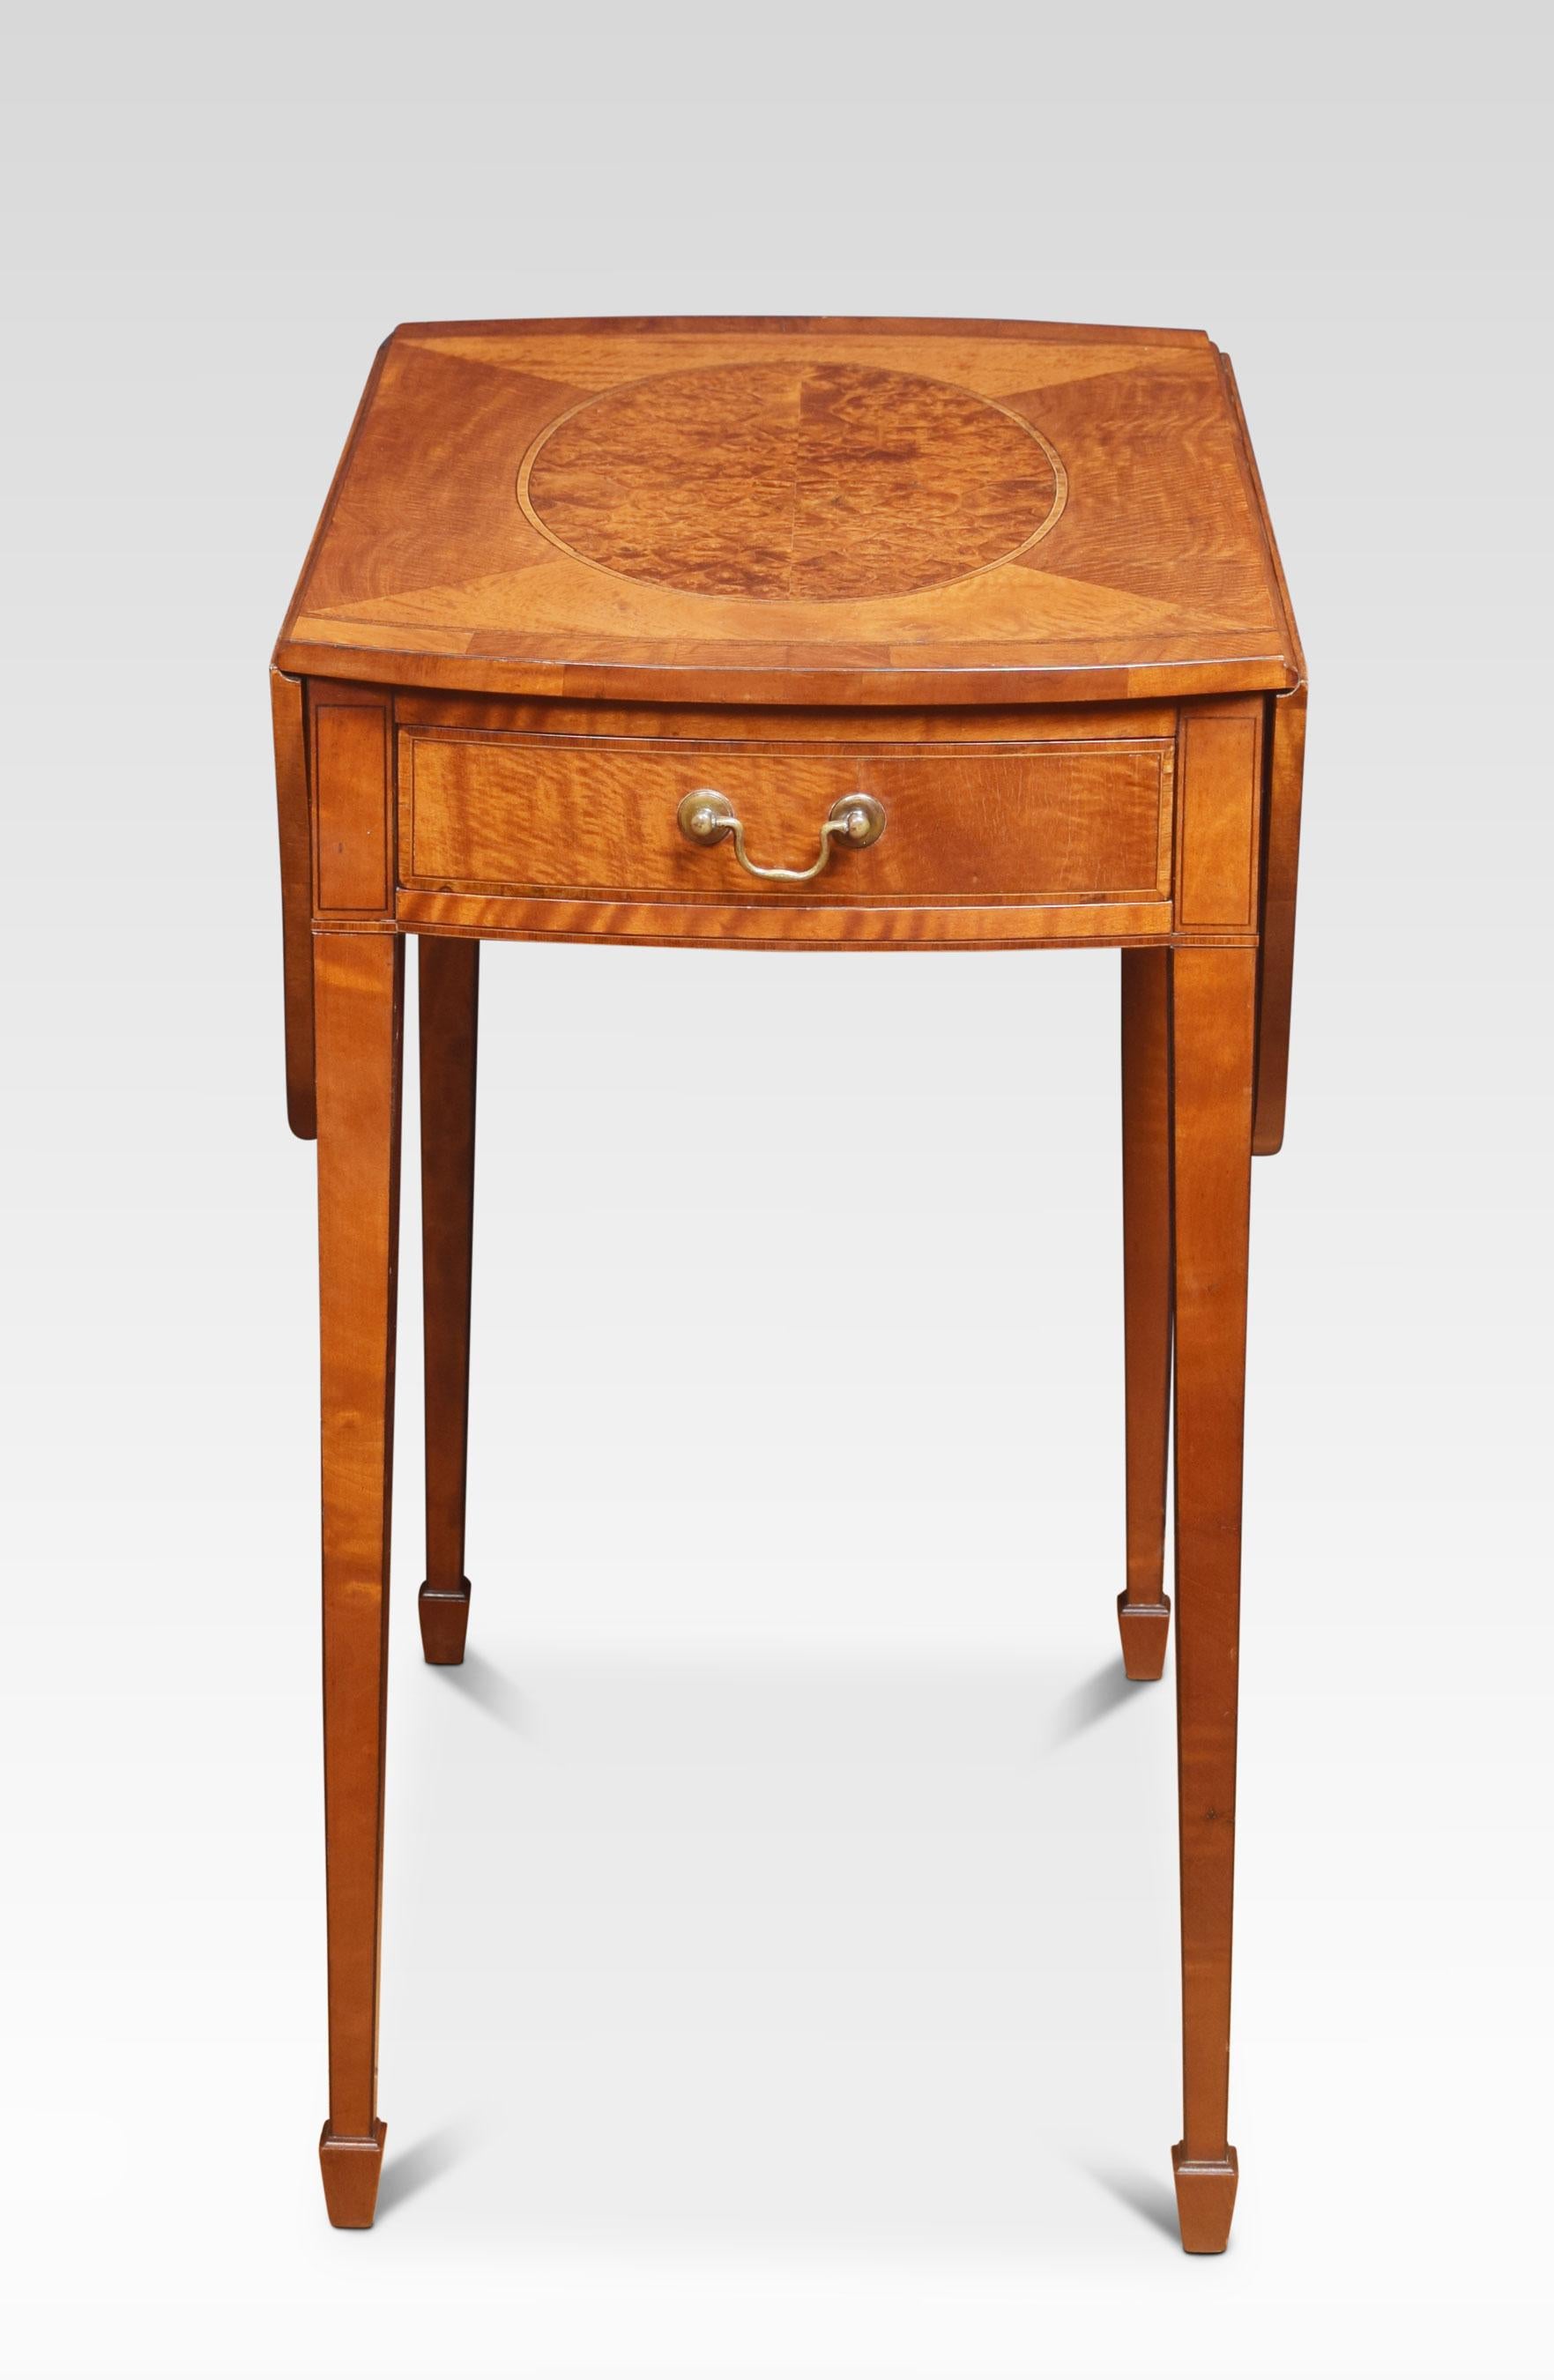 Pembroke-Tisch im Stil von George III. aus satiniertem Holz, ovale Platte mit zentraler Amboyna-Einlage mit zwei aufklappbaren Klappen, darüber eine Schublade, auf sich verjüngenden Beinen mit quadratischem Querschnitt, die in Spatenfüßen